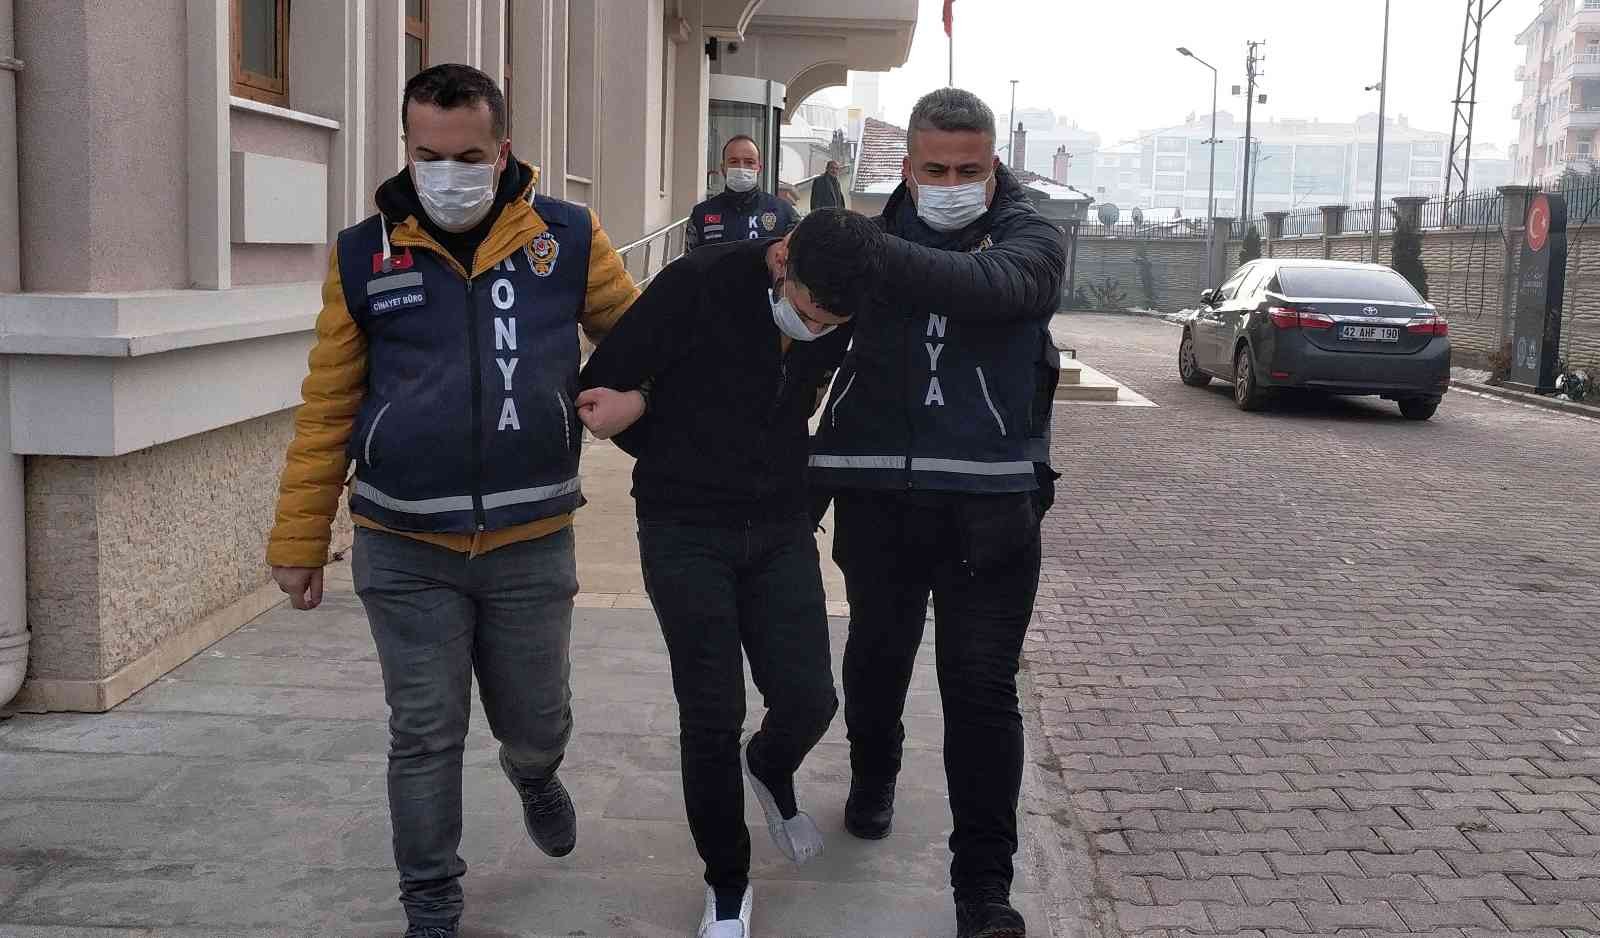 Konya’daki 1 kişinin öldüğü kavgada 9 kişi tutuklandı #konya